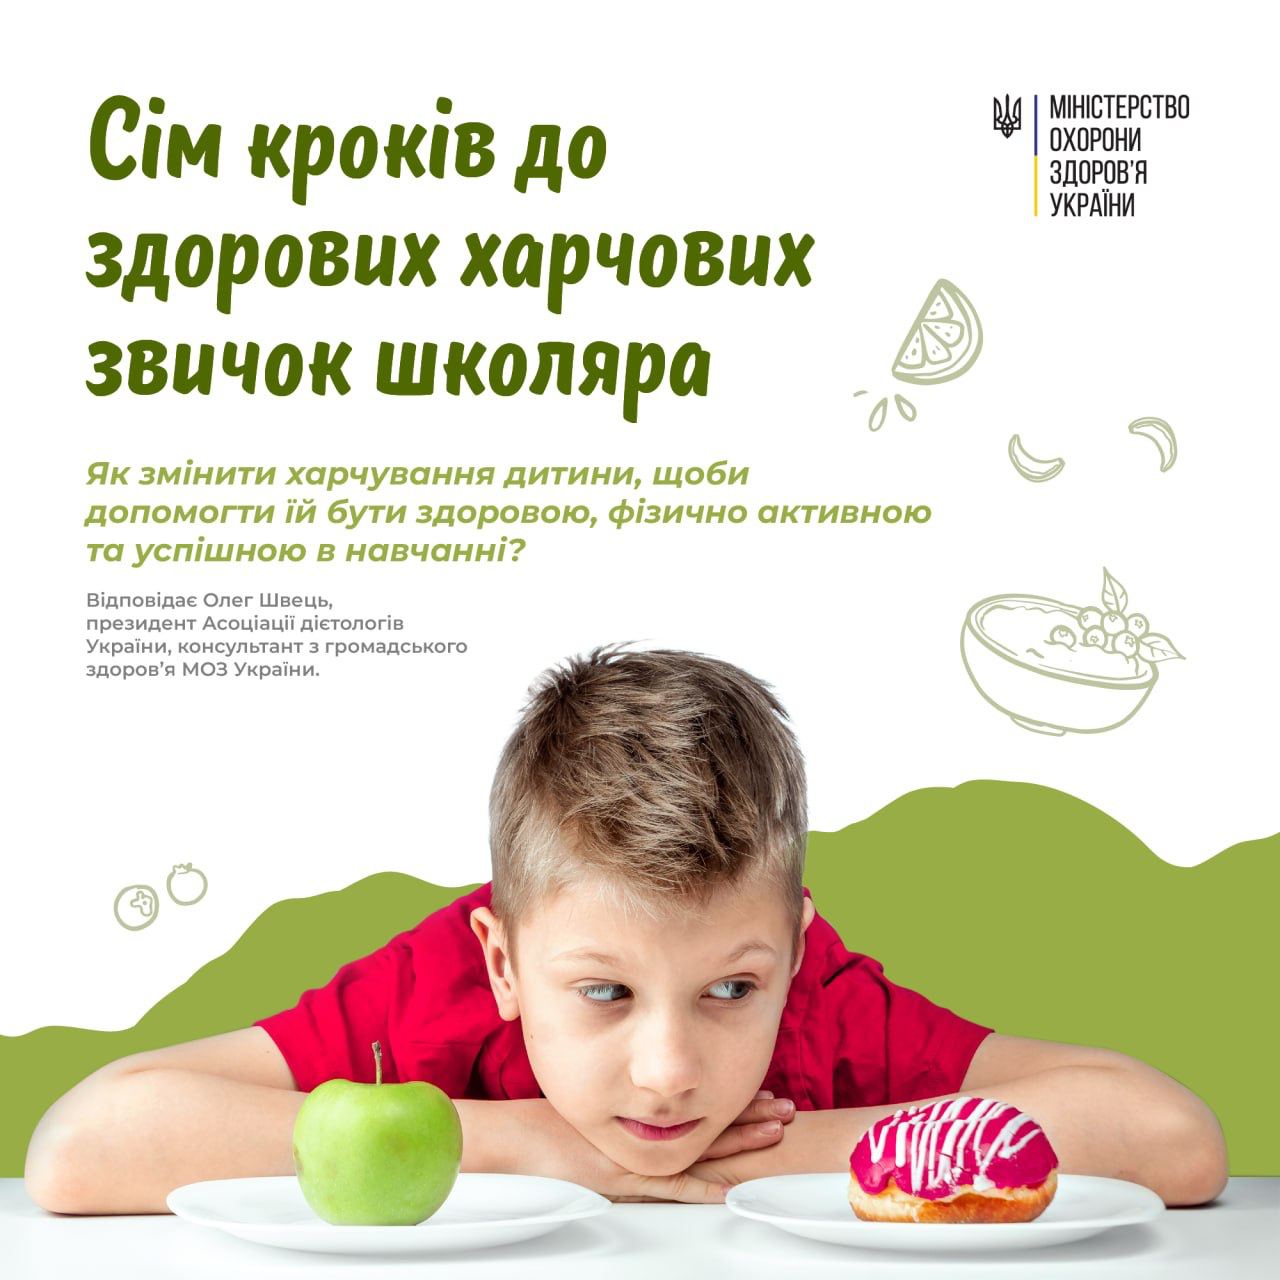 На зображенні дитина перед якою смаколик і яблуко, напис Як змінити харчування дитини, щоби допомогти їй бути здоровою, фізично активною та успішною в навчанні?